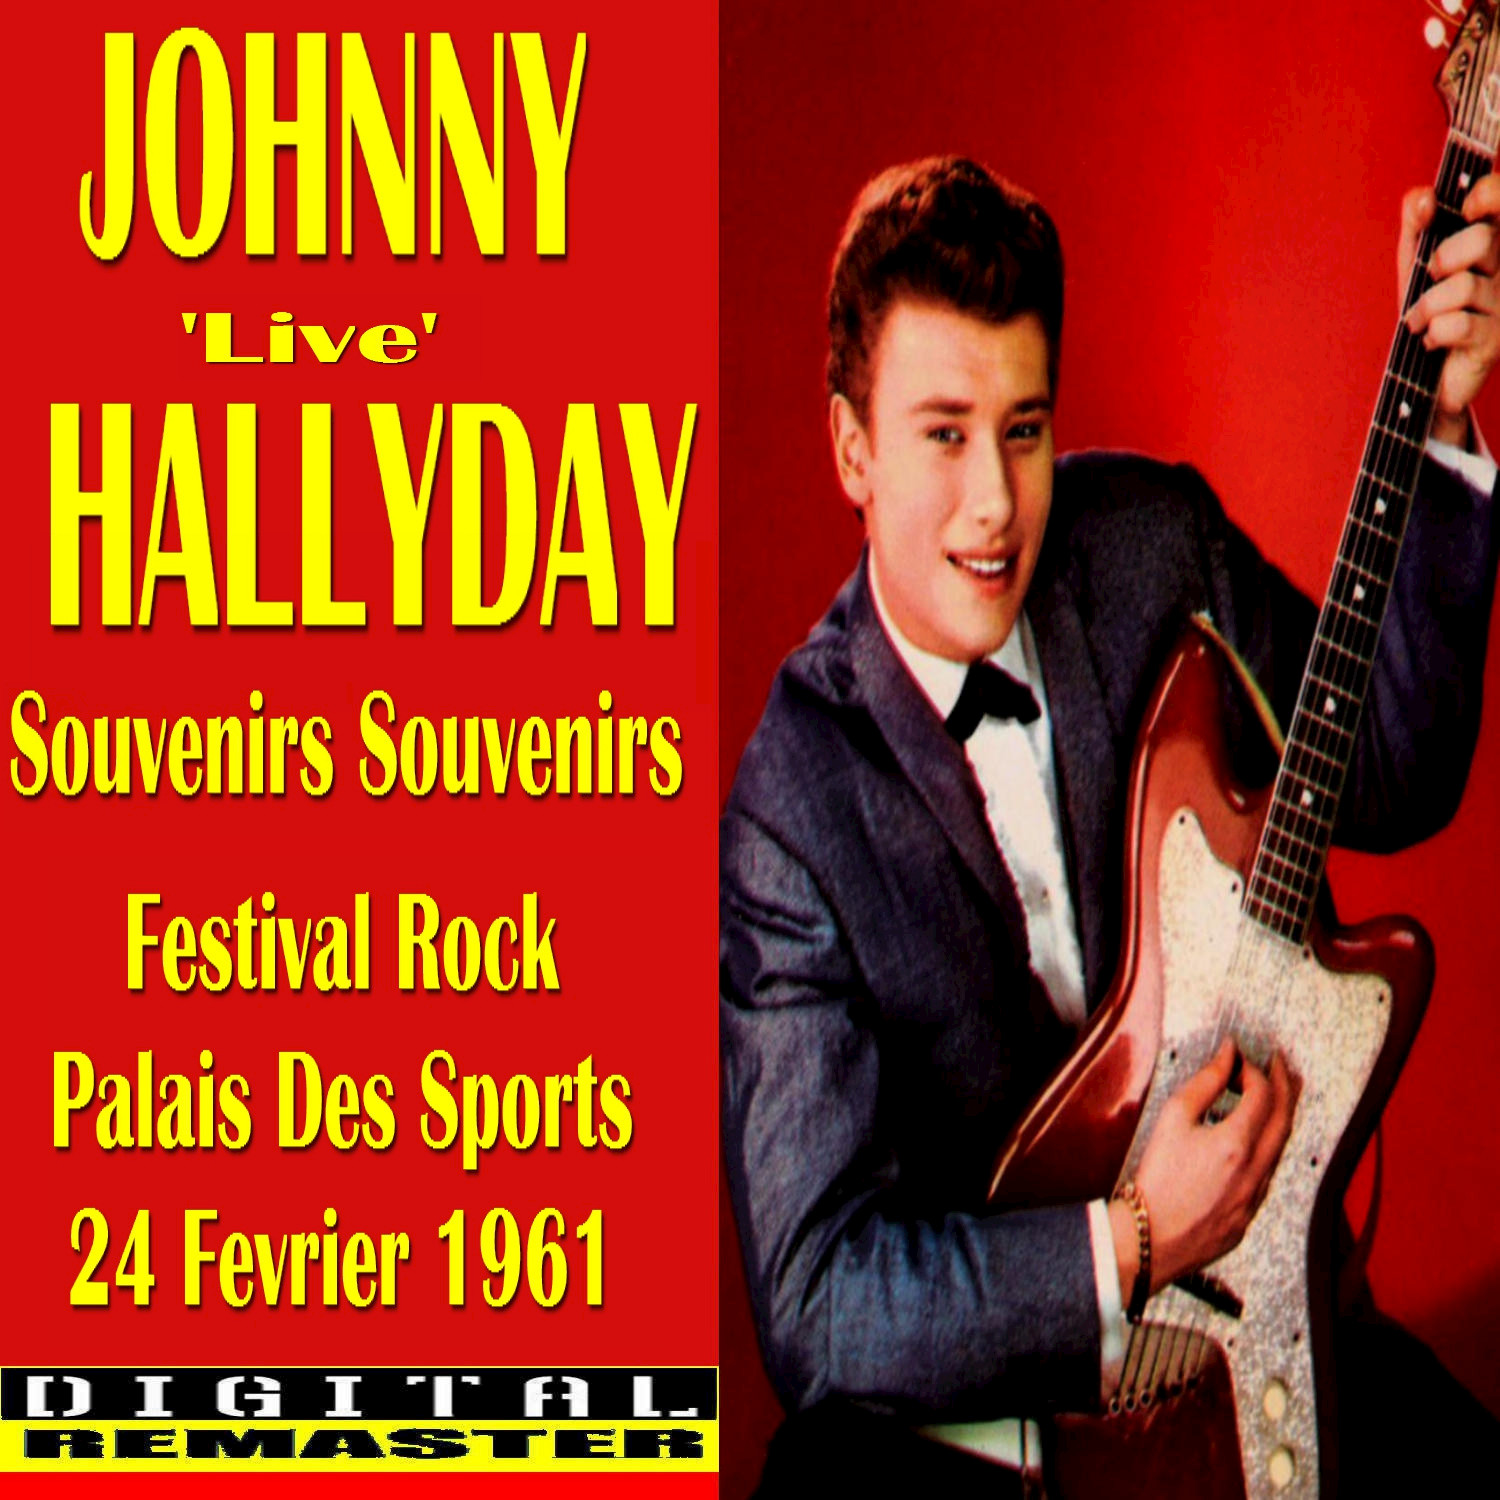 Johnny Hallyday Souvenirs Souvenirs 'Live' in Paris 1961